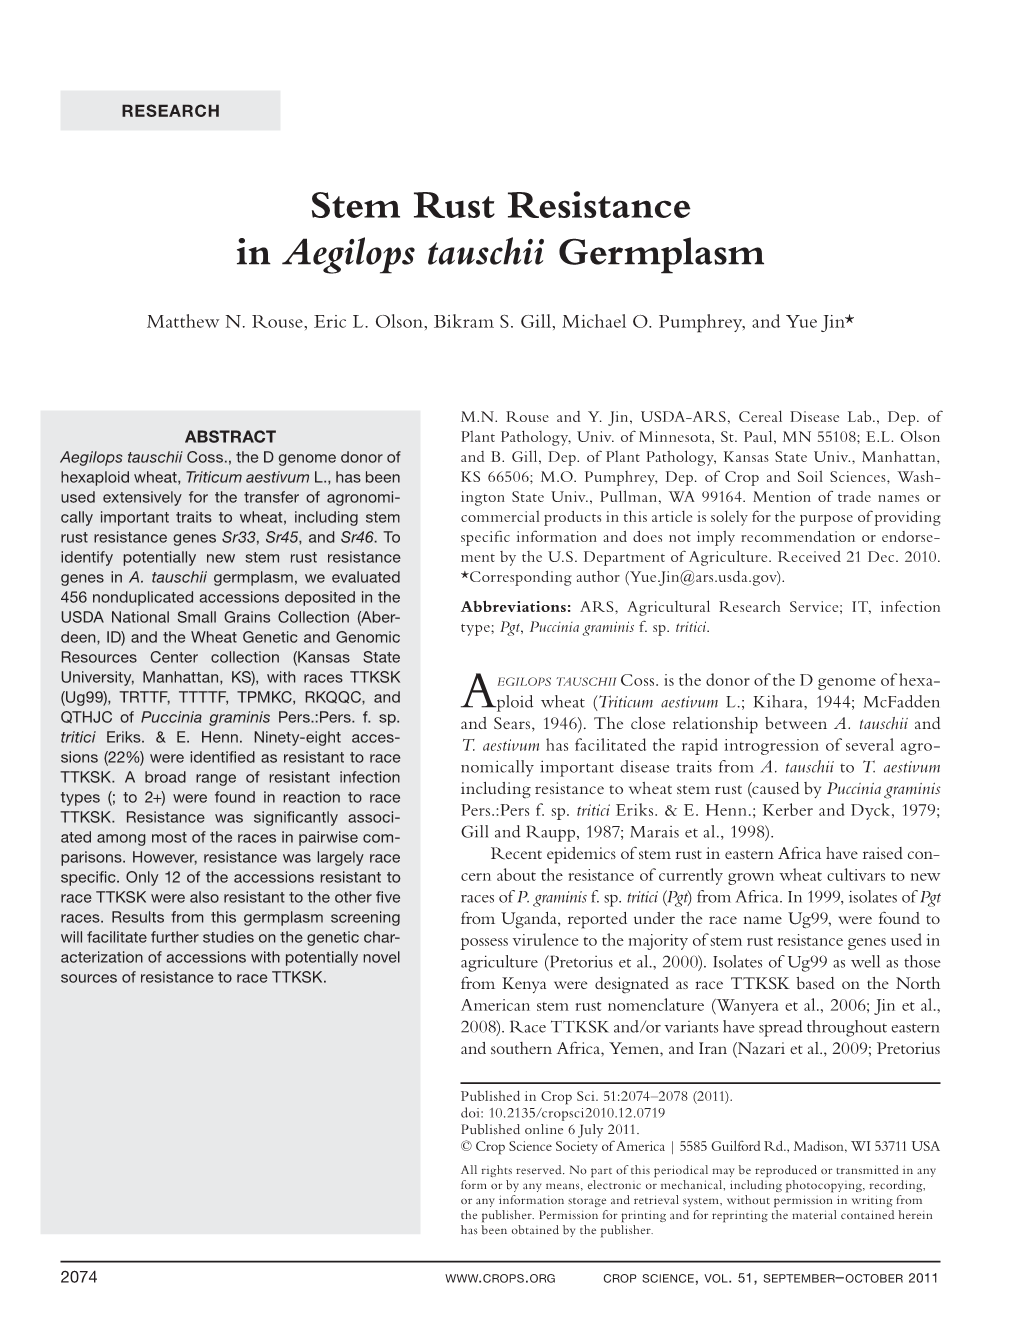 Stem Rust Resistance in Aegilops Tauschii Germplasm